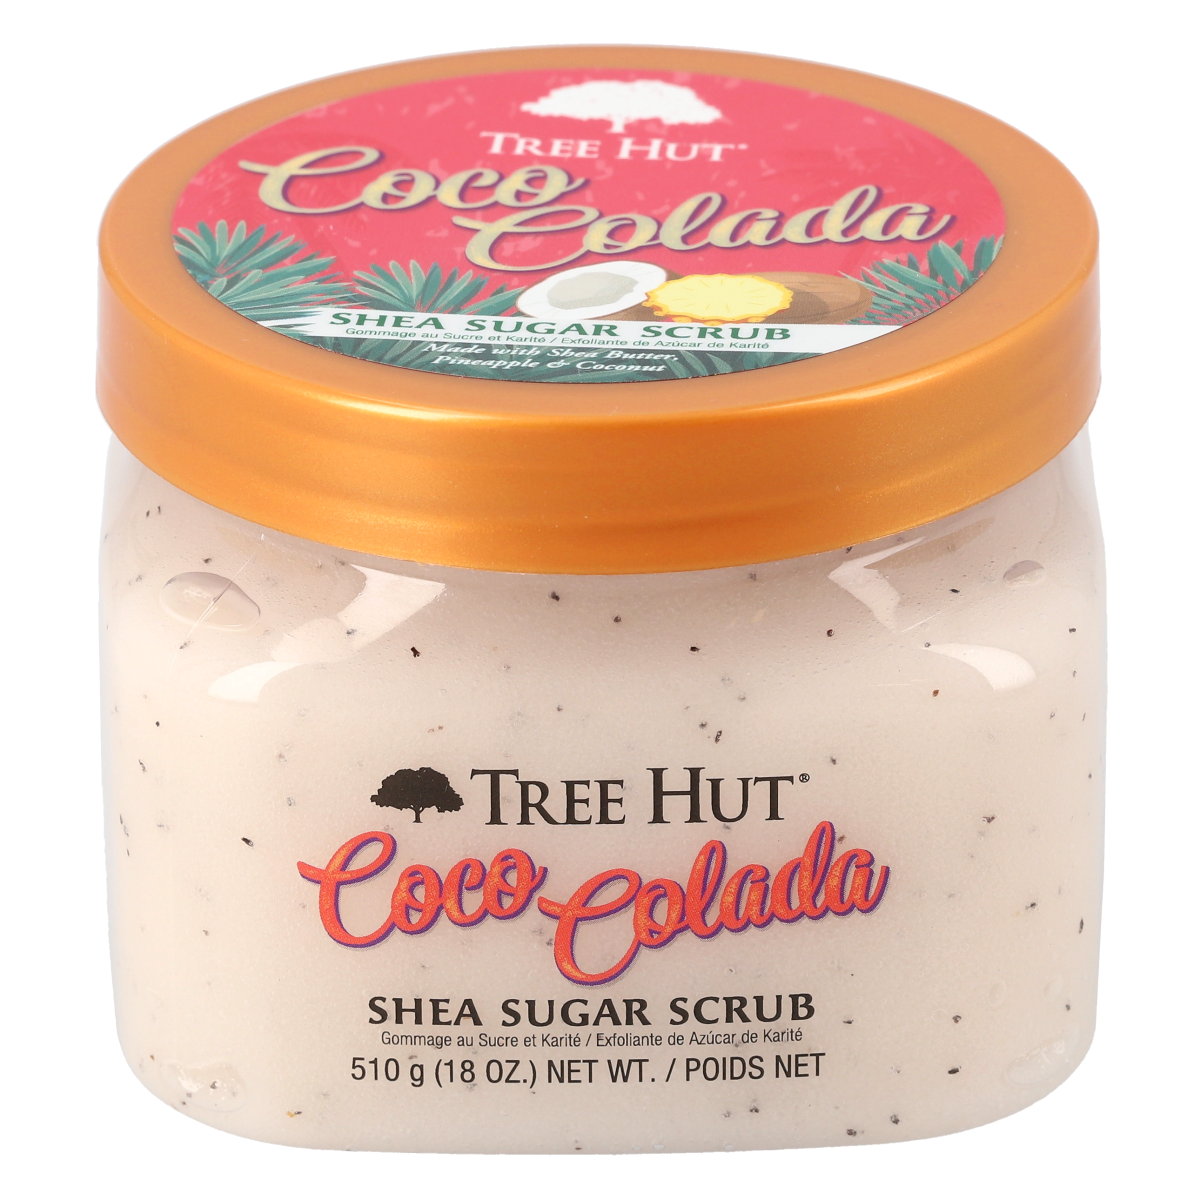 Coco Colada shea sugar scrub - tree hut - nuestro secreto